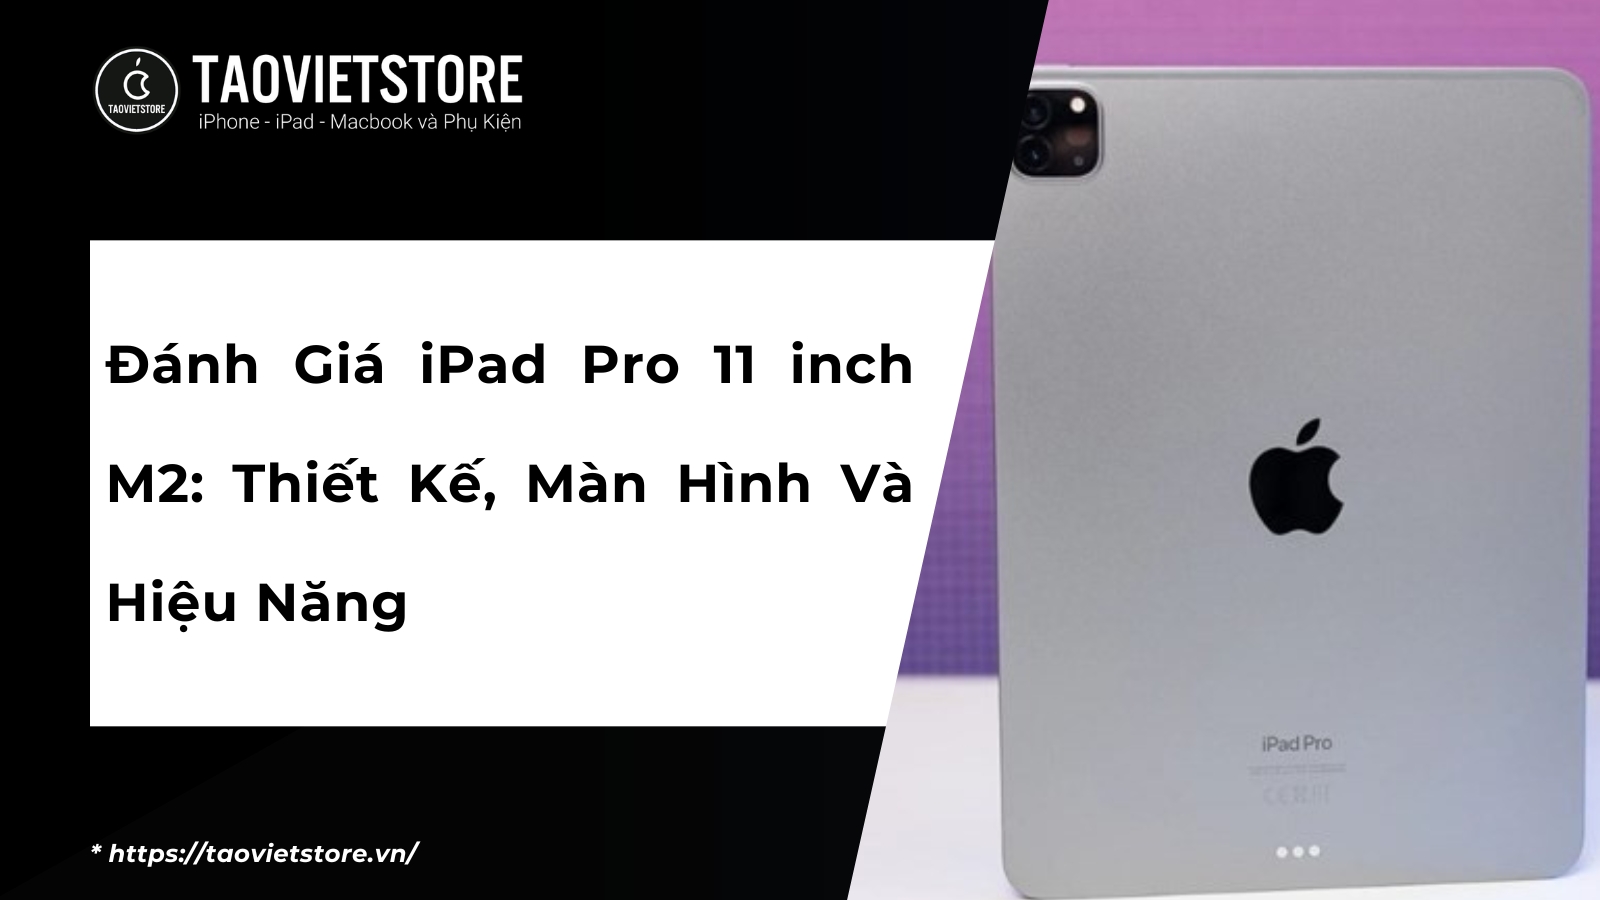 Đánh Giá iPad Pro 11 inch M2: Thiết Kế, Màn Hình Và Hiệu Năng